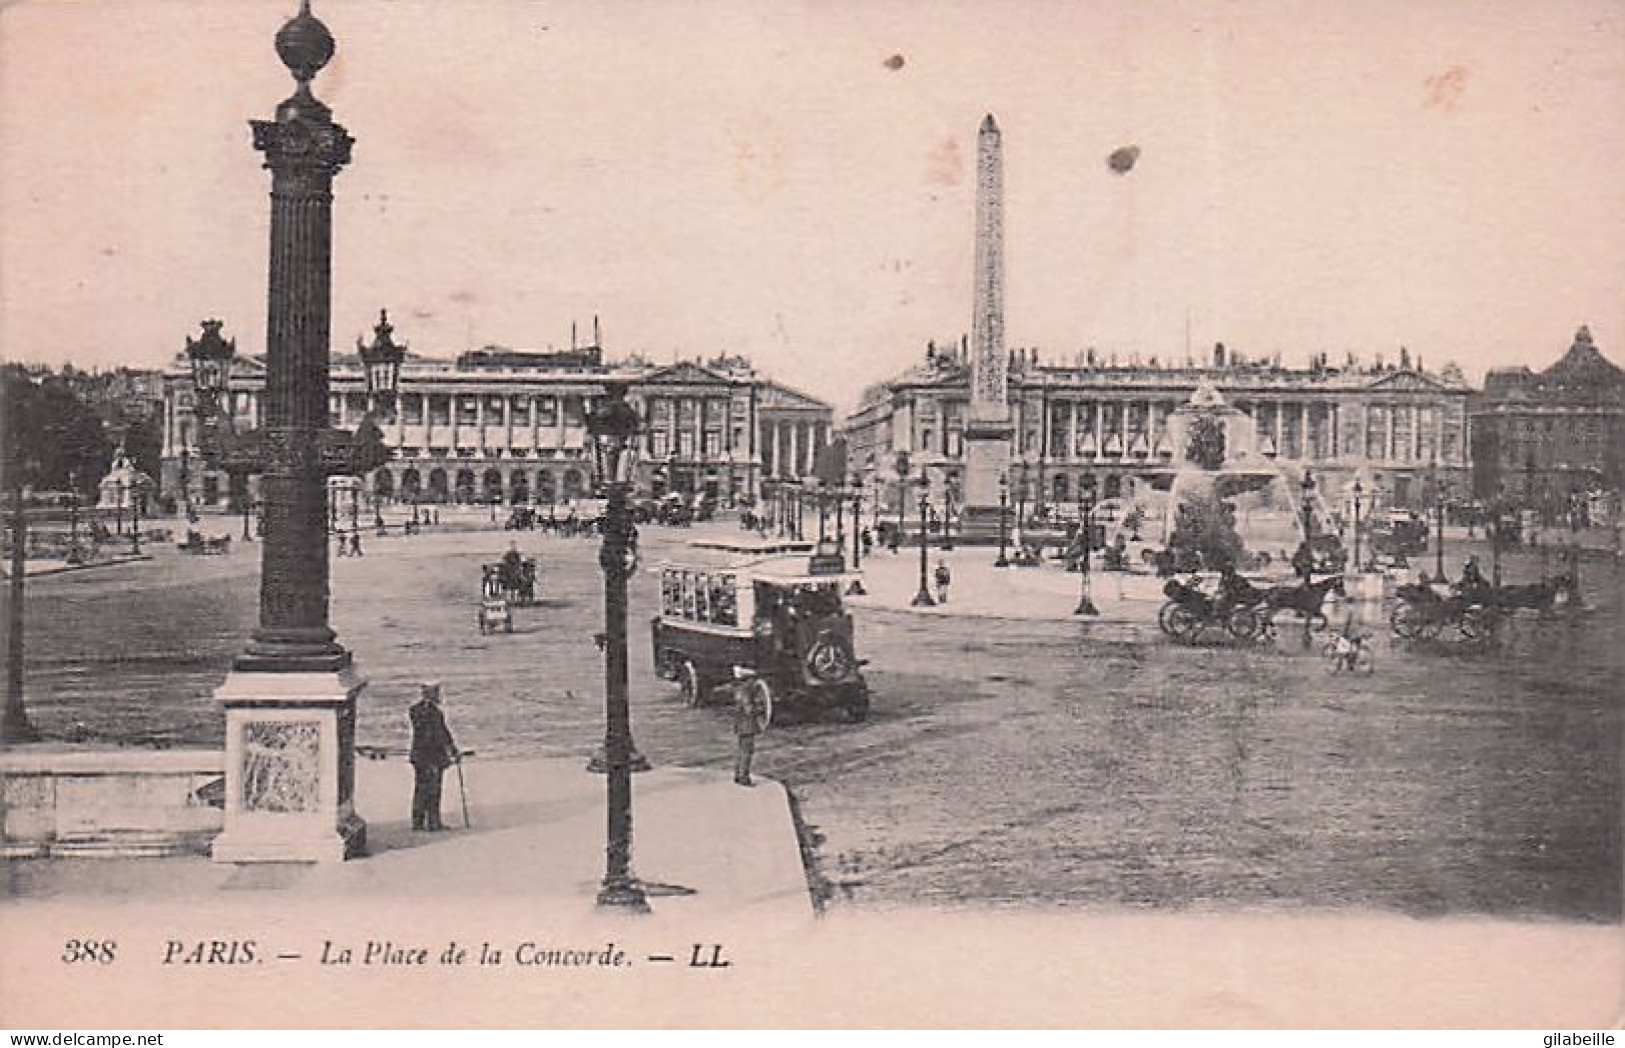 75 - PARIS 01 - Place De La Concorde - Paris (01)